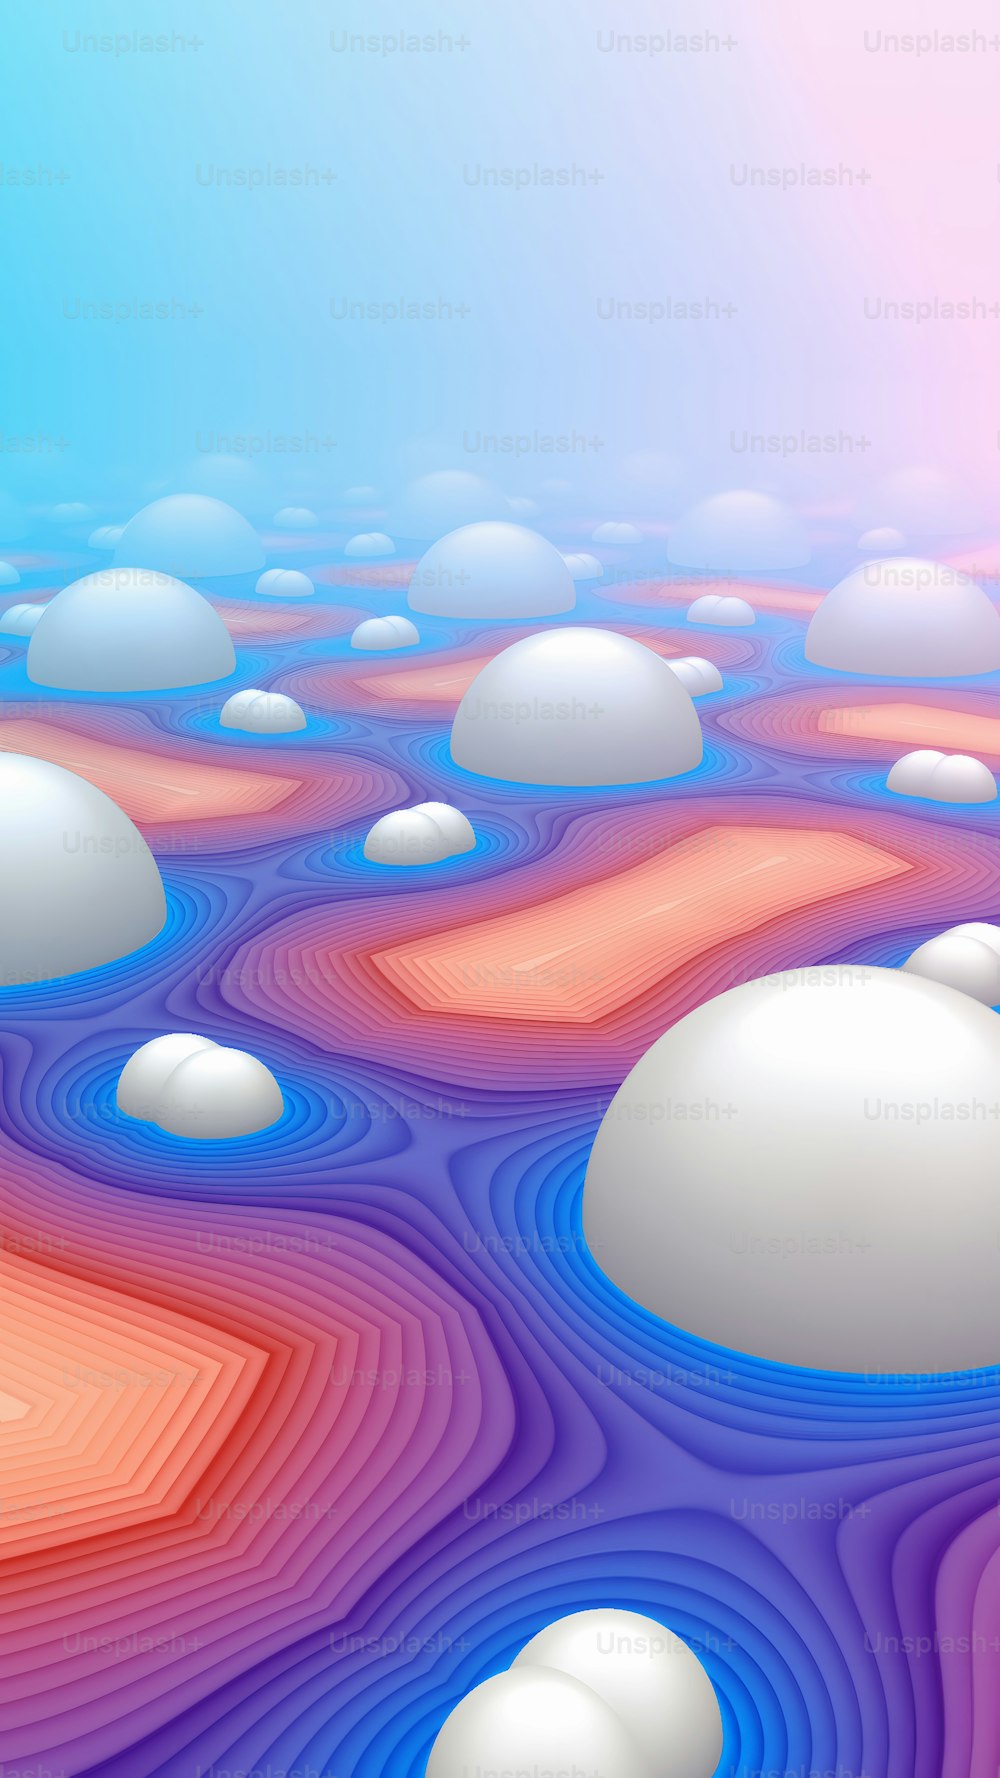 uma imagem gerada por computador de uma paisagem colorida